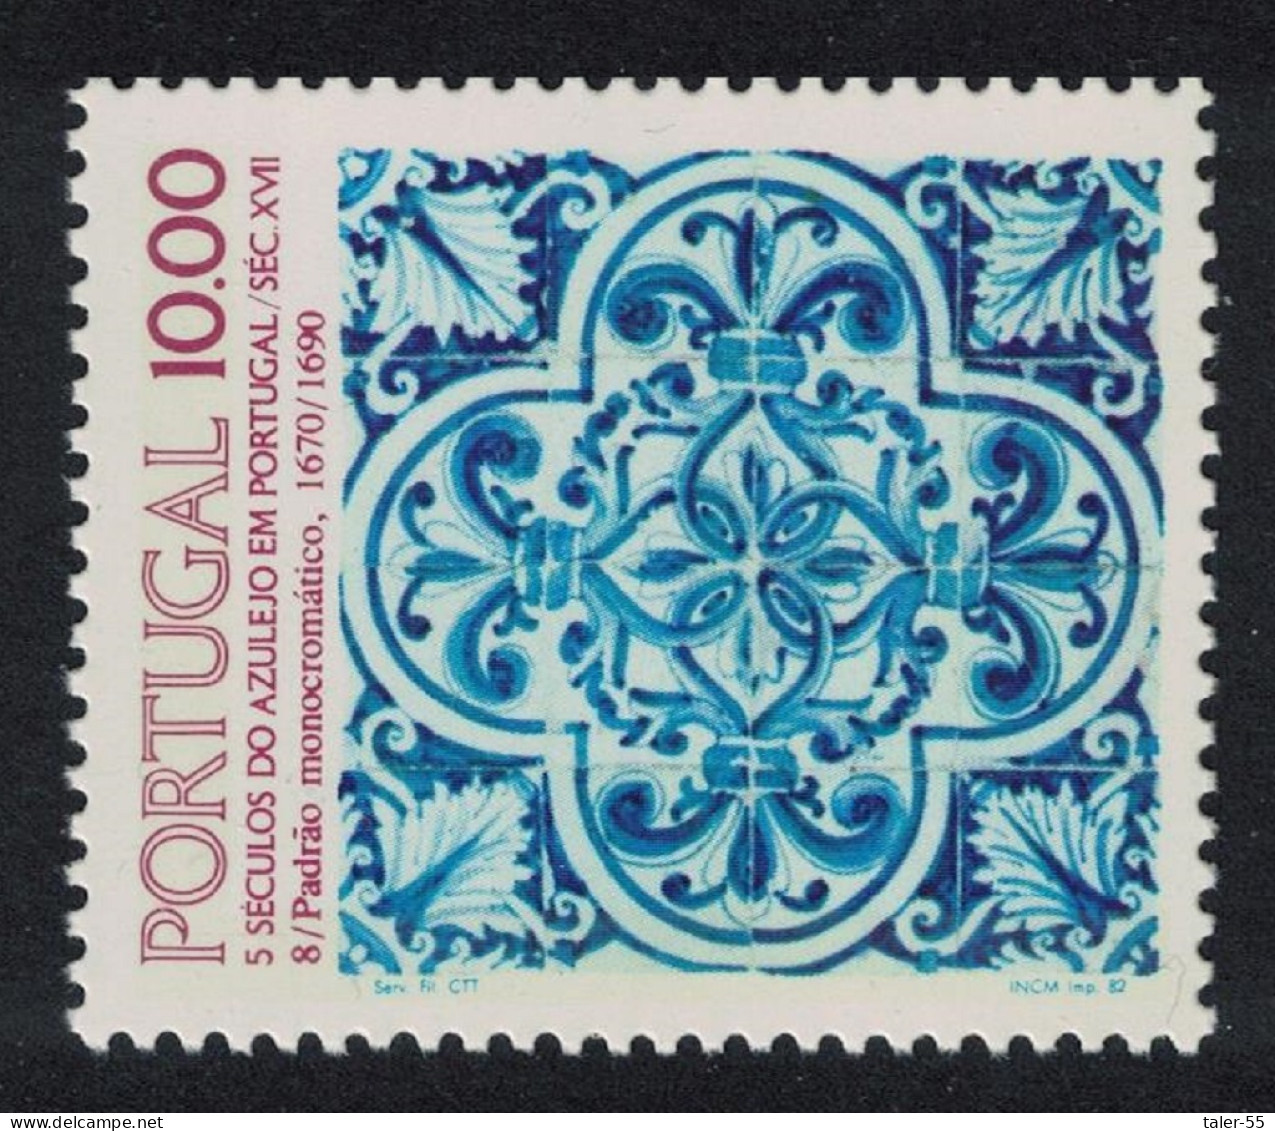 Portugal Tiles 8th Series 1982 MNH SG#1902 - Neufs